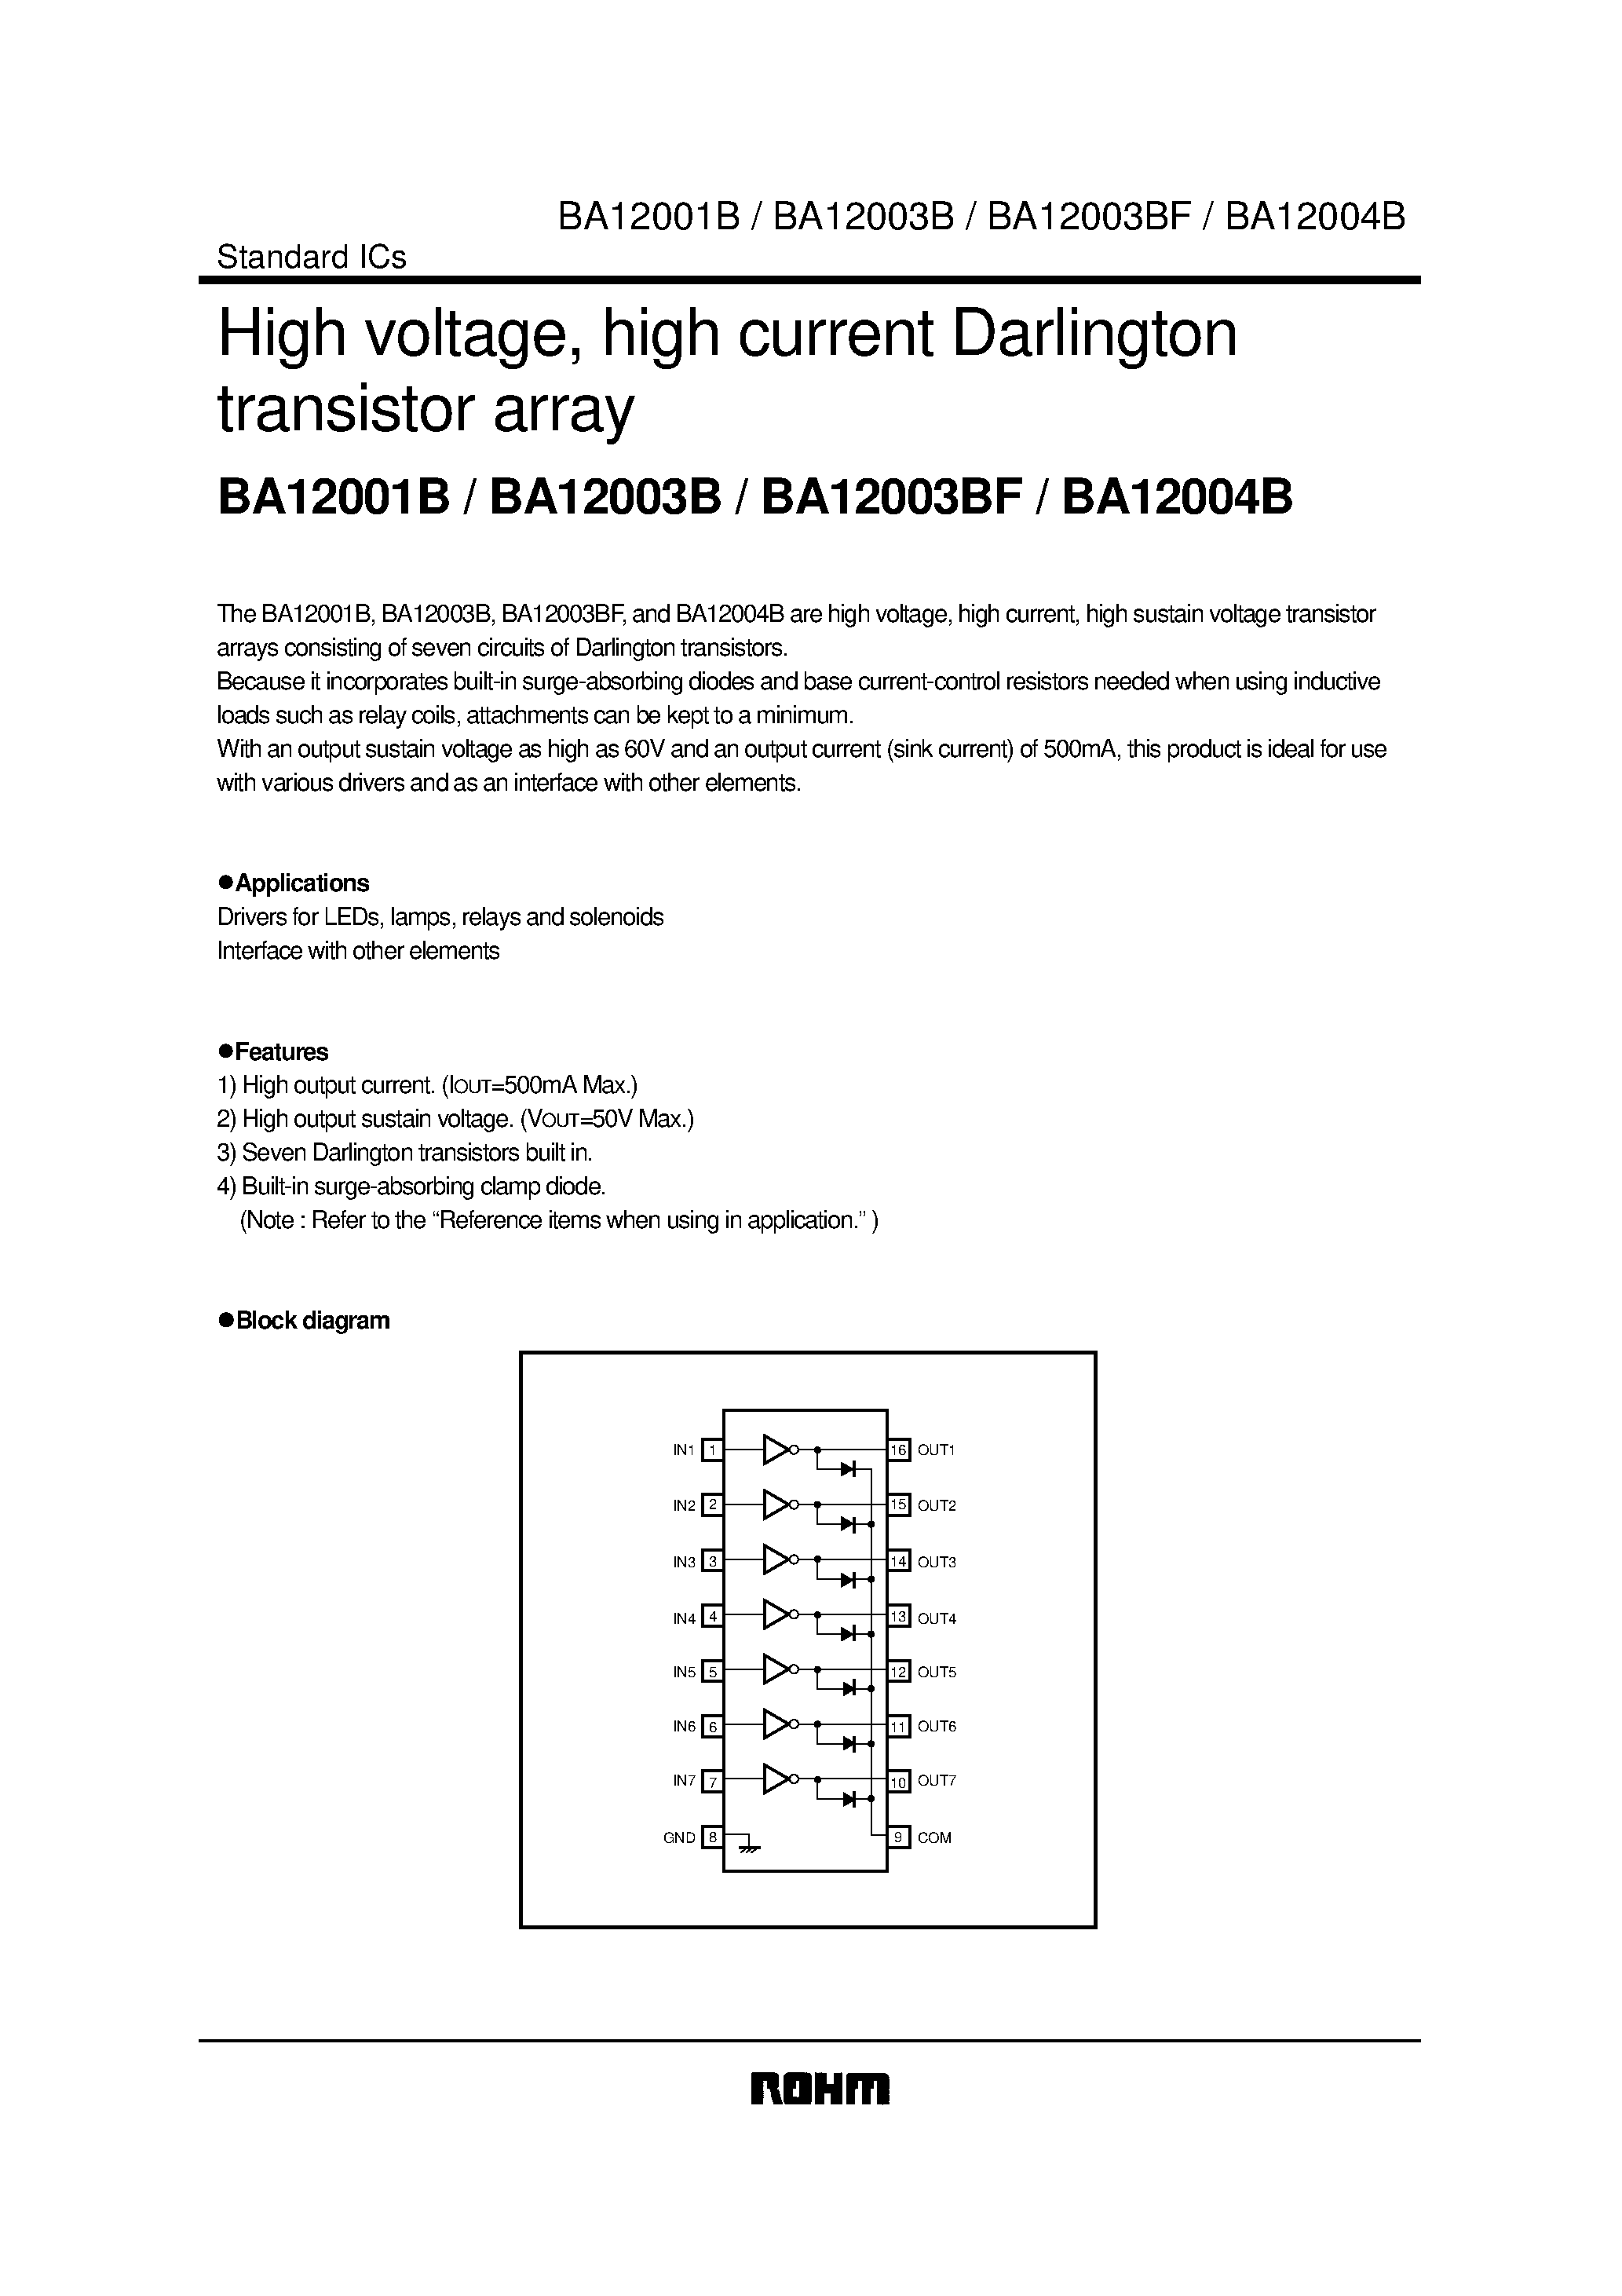 Даташит BA12003B - High voltage/ high current Darlington transistor array страница 1